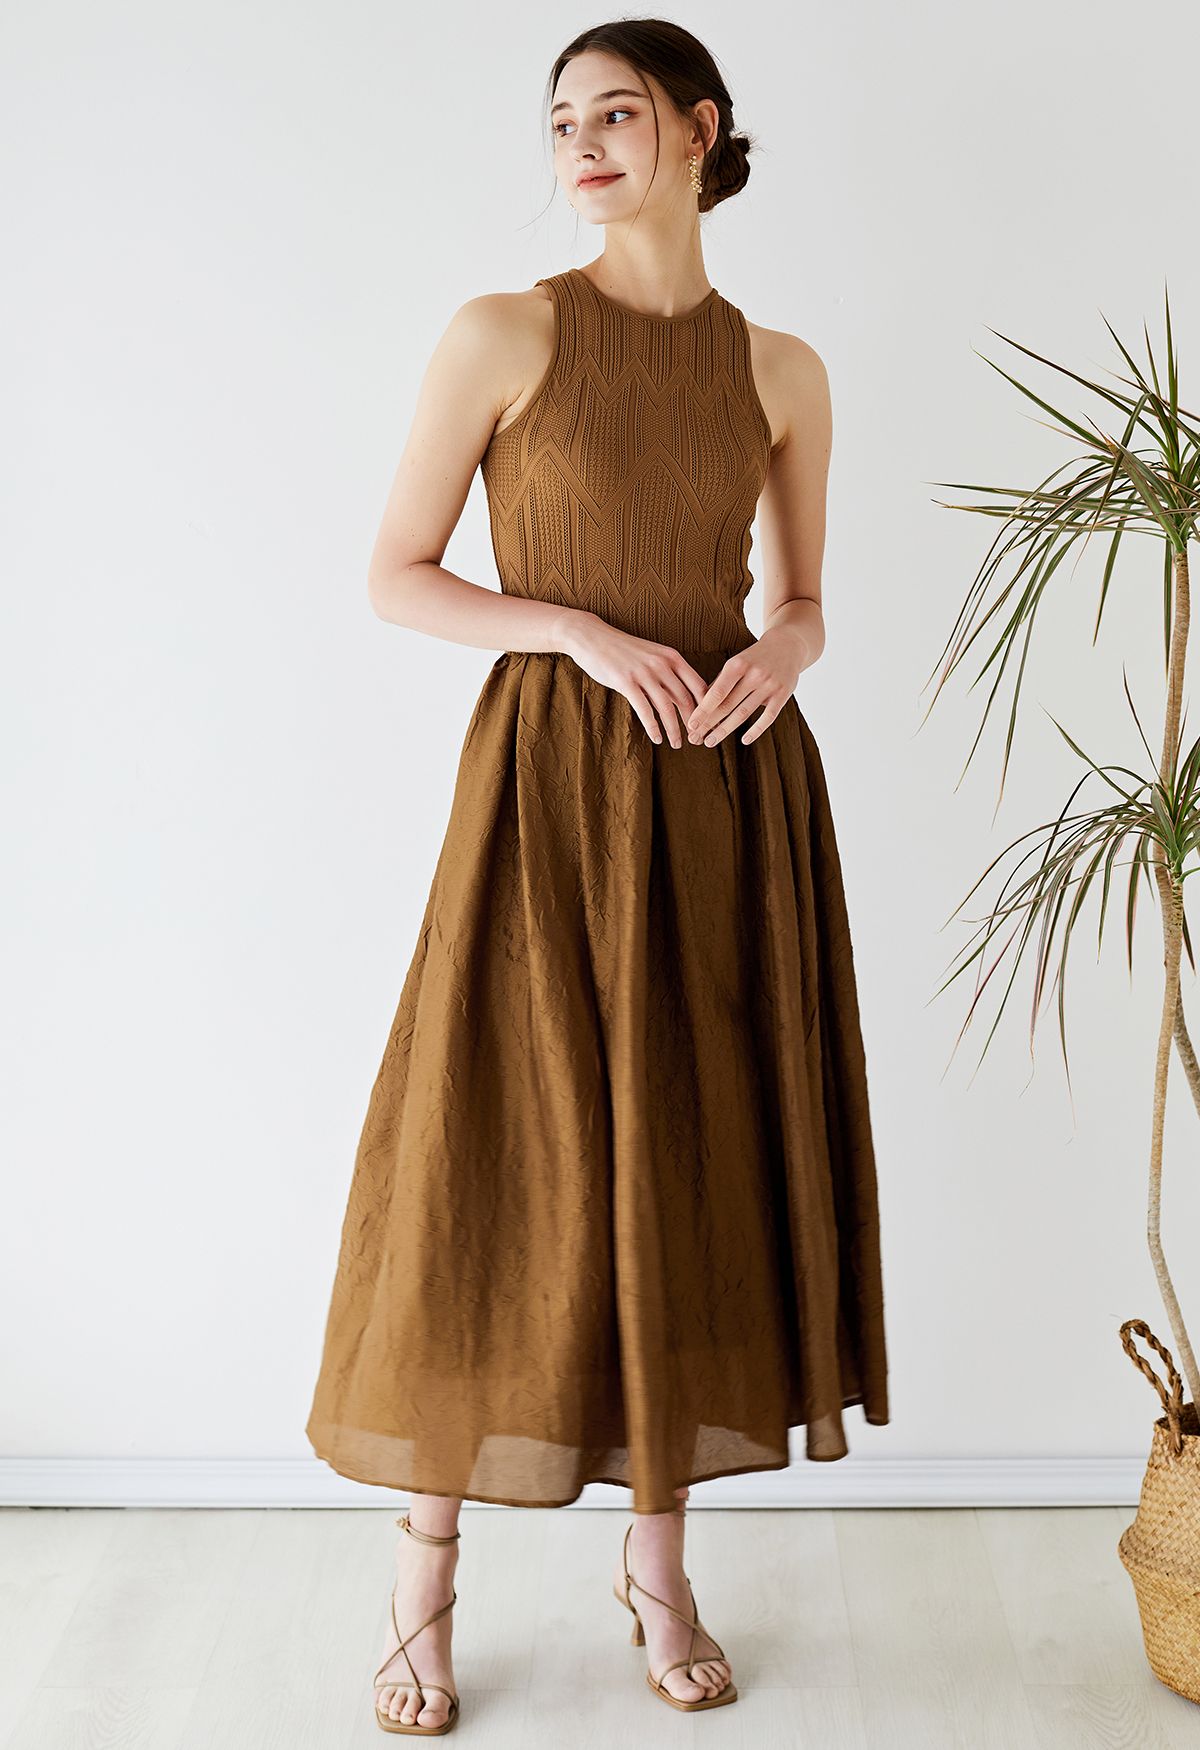 Ärmelloses Kleid mit gespleißter Struktur in Braun